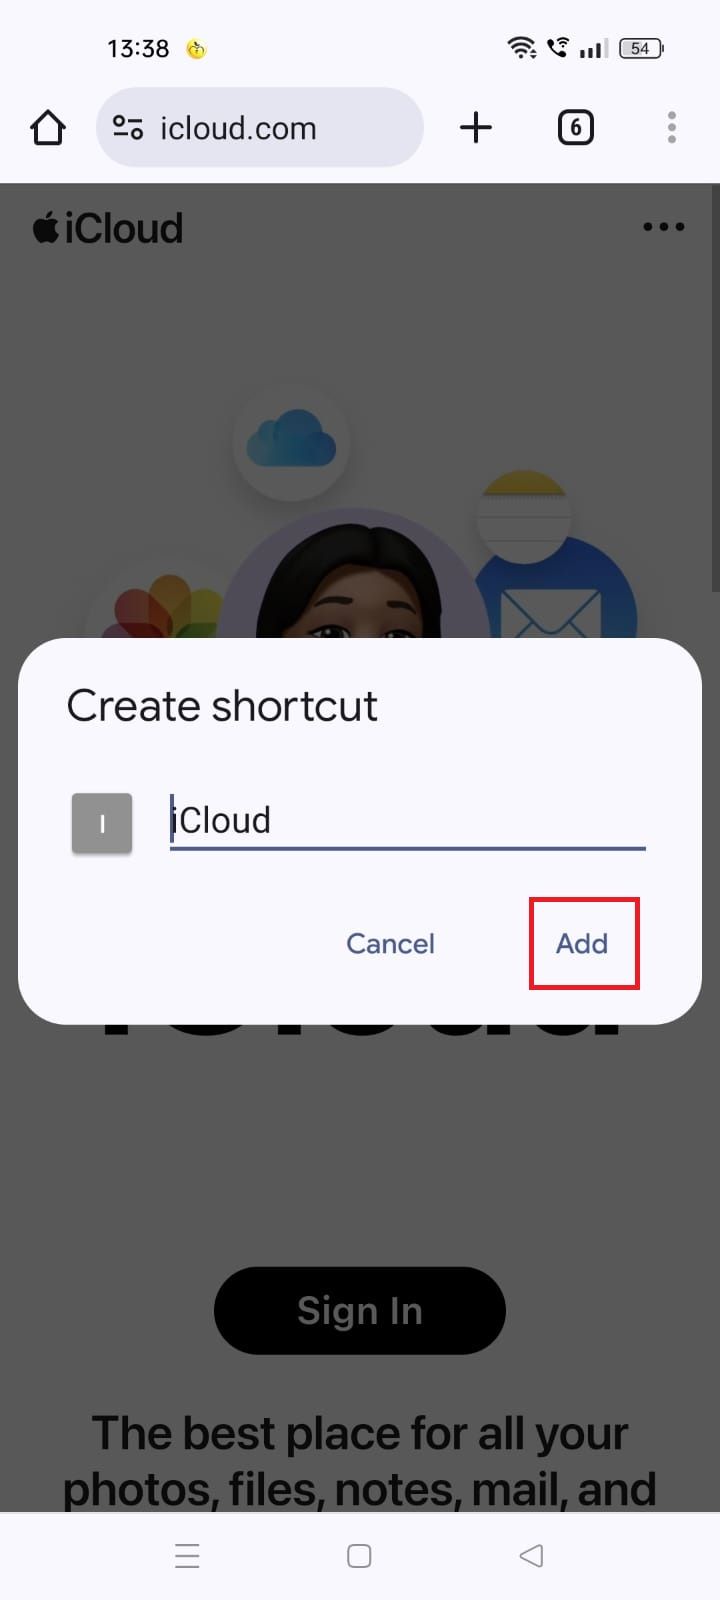 Captura de tela destacando a opção Adicionar na janela pop-up Criar atalho